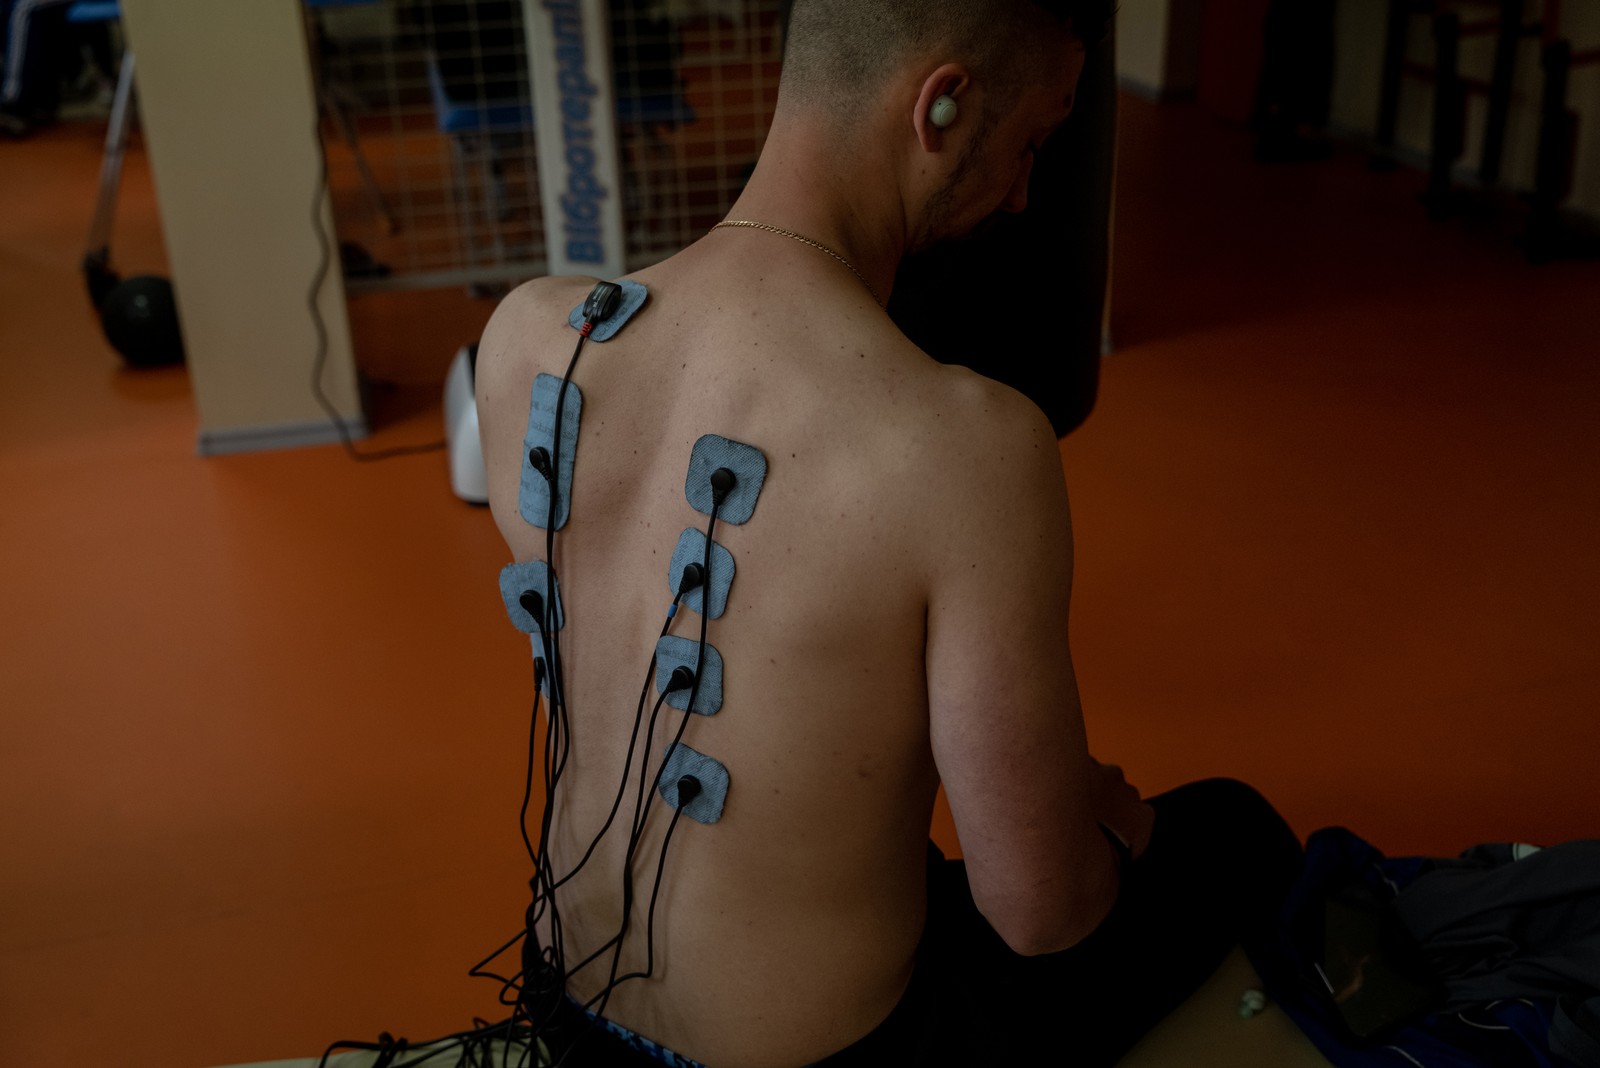 Técnica de eletroterapia usada em um soldado ucraniano em um centro de reabilitação — Foto: Nicole Tung/The New York Times